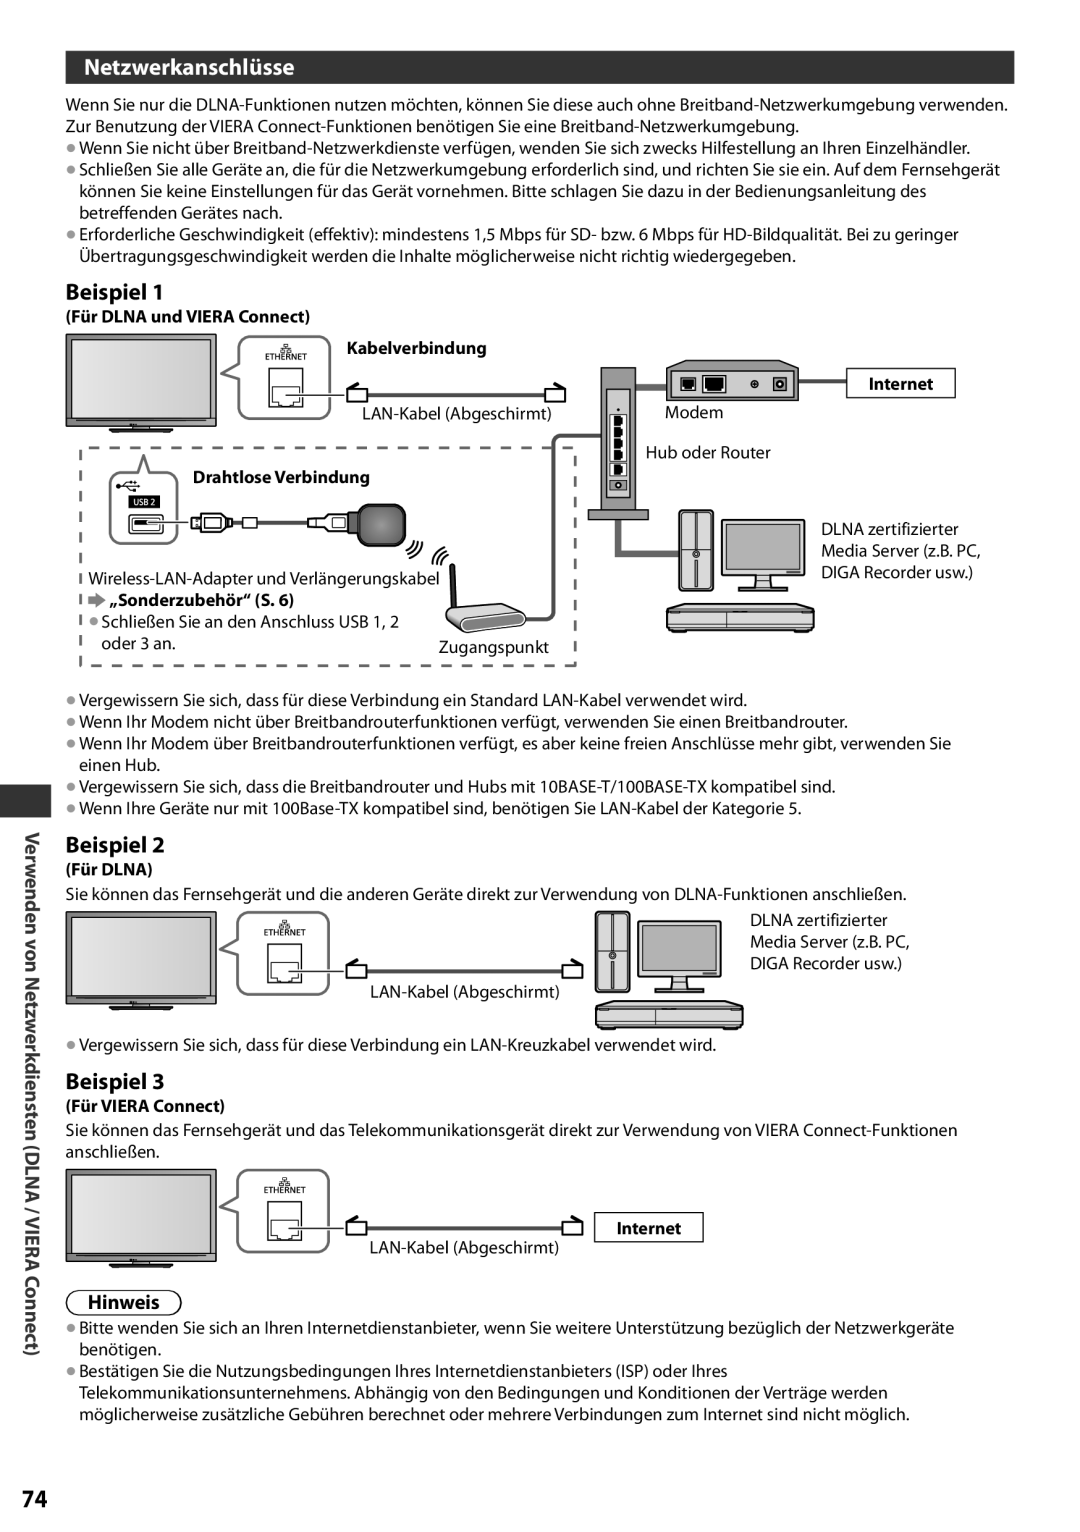 Panasonic TX-L37EF32 Netzwerkanschlüsse, Beispiel, Verwenden von Netzwerkdiensten DLNA / VIERA Connect, Hinweis, Internet 